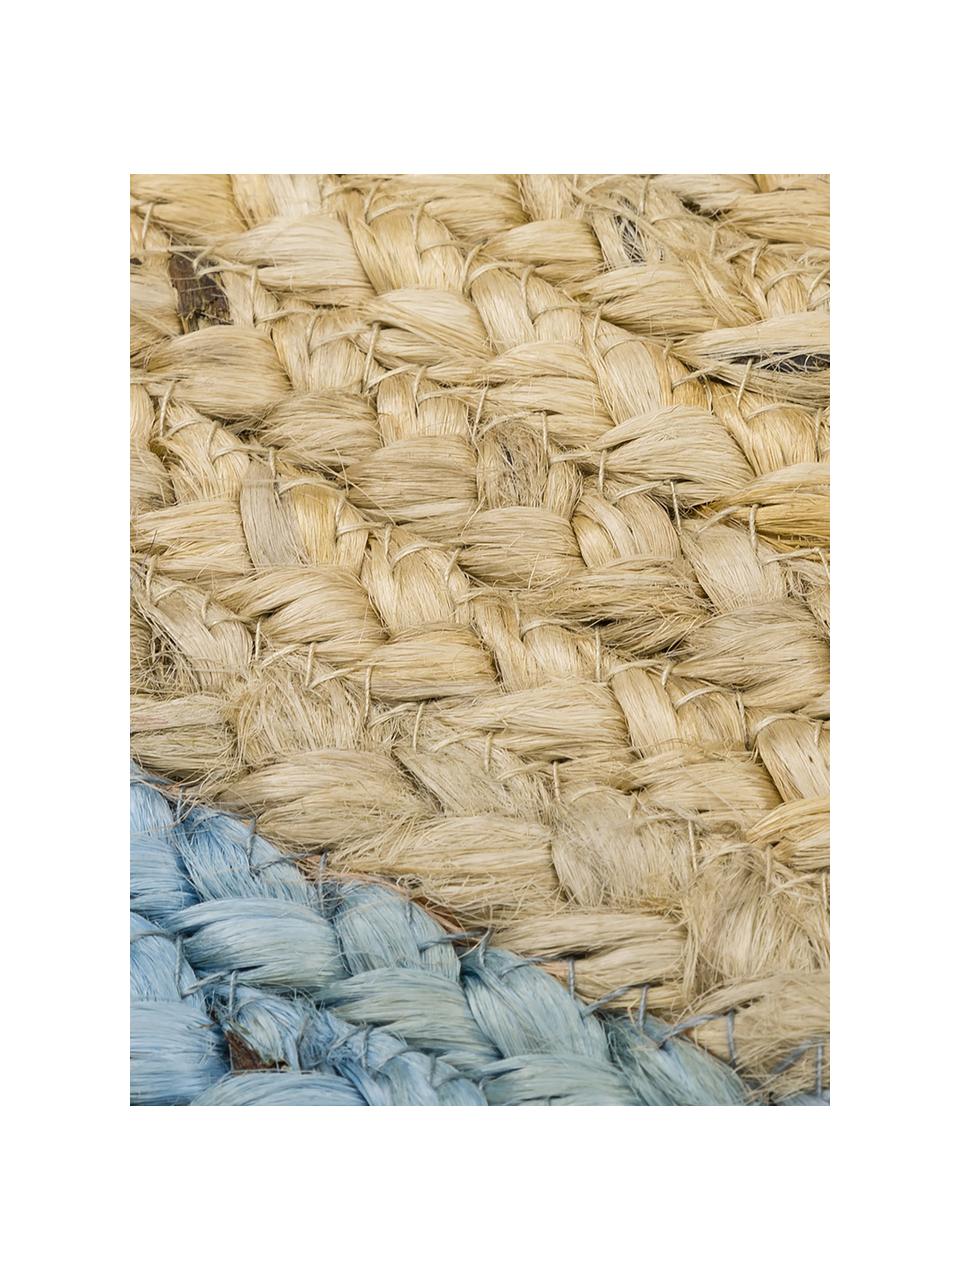 Ručně vyrobený kulatý koberec z juty Shanta, 100 % juta

Vzhledem k drsné a hrubé struktuře jutové tkaniny jsou výrobky z juty méně vhodné pro přímý kontakt s pokožkou., Juta, odstíny modré, Ø 100 cm (velikost XS)